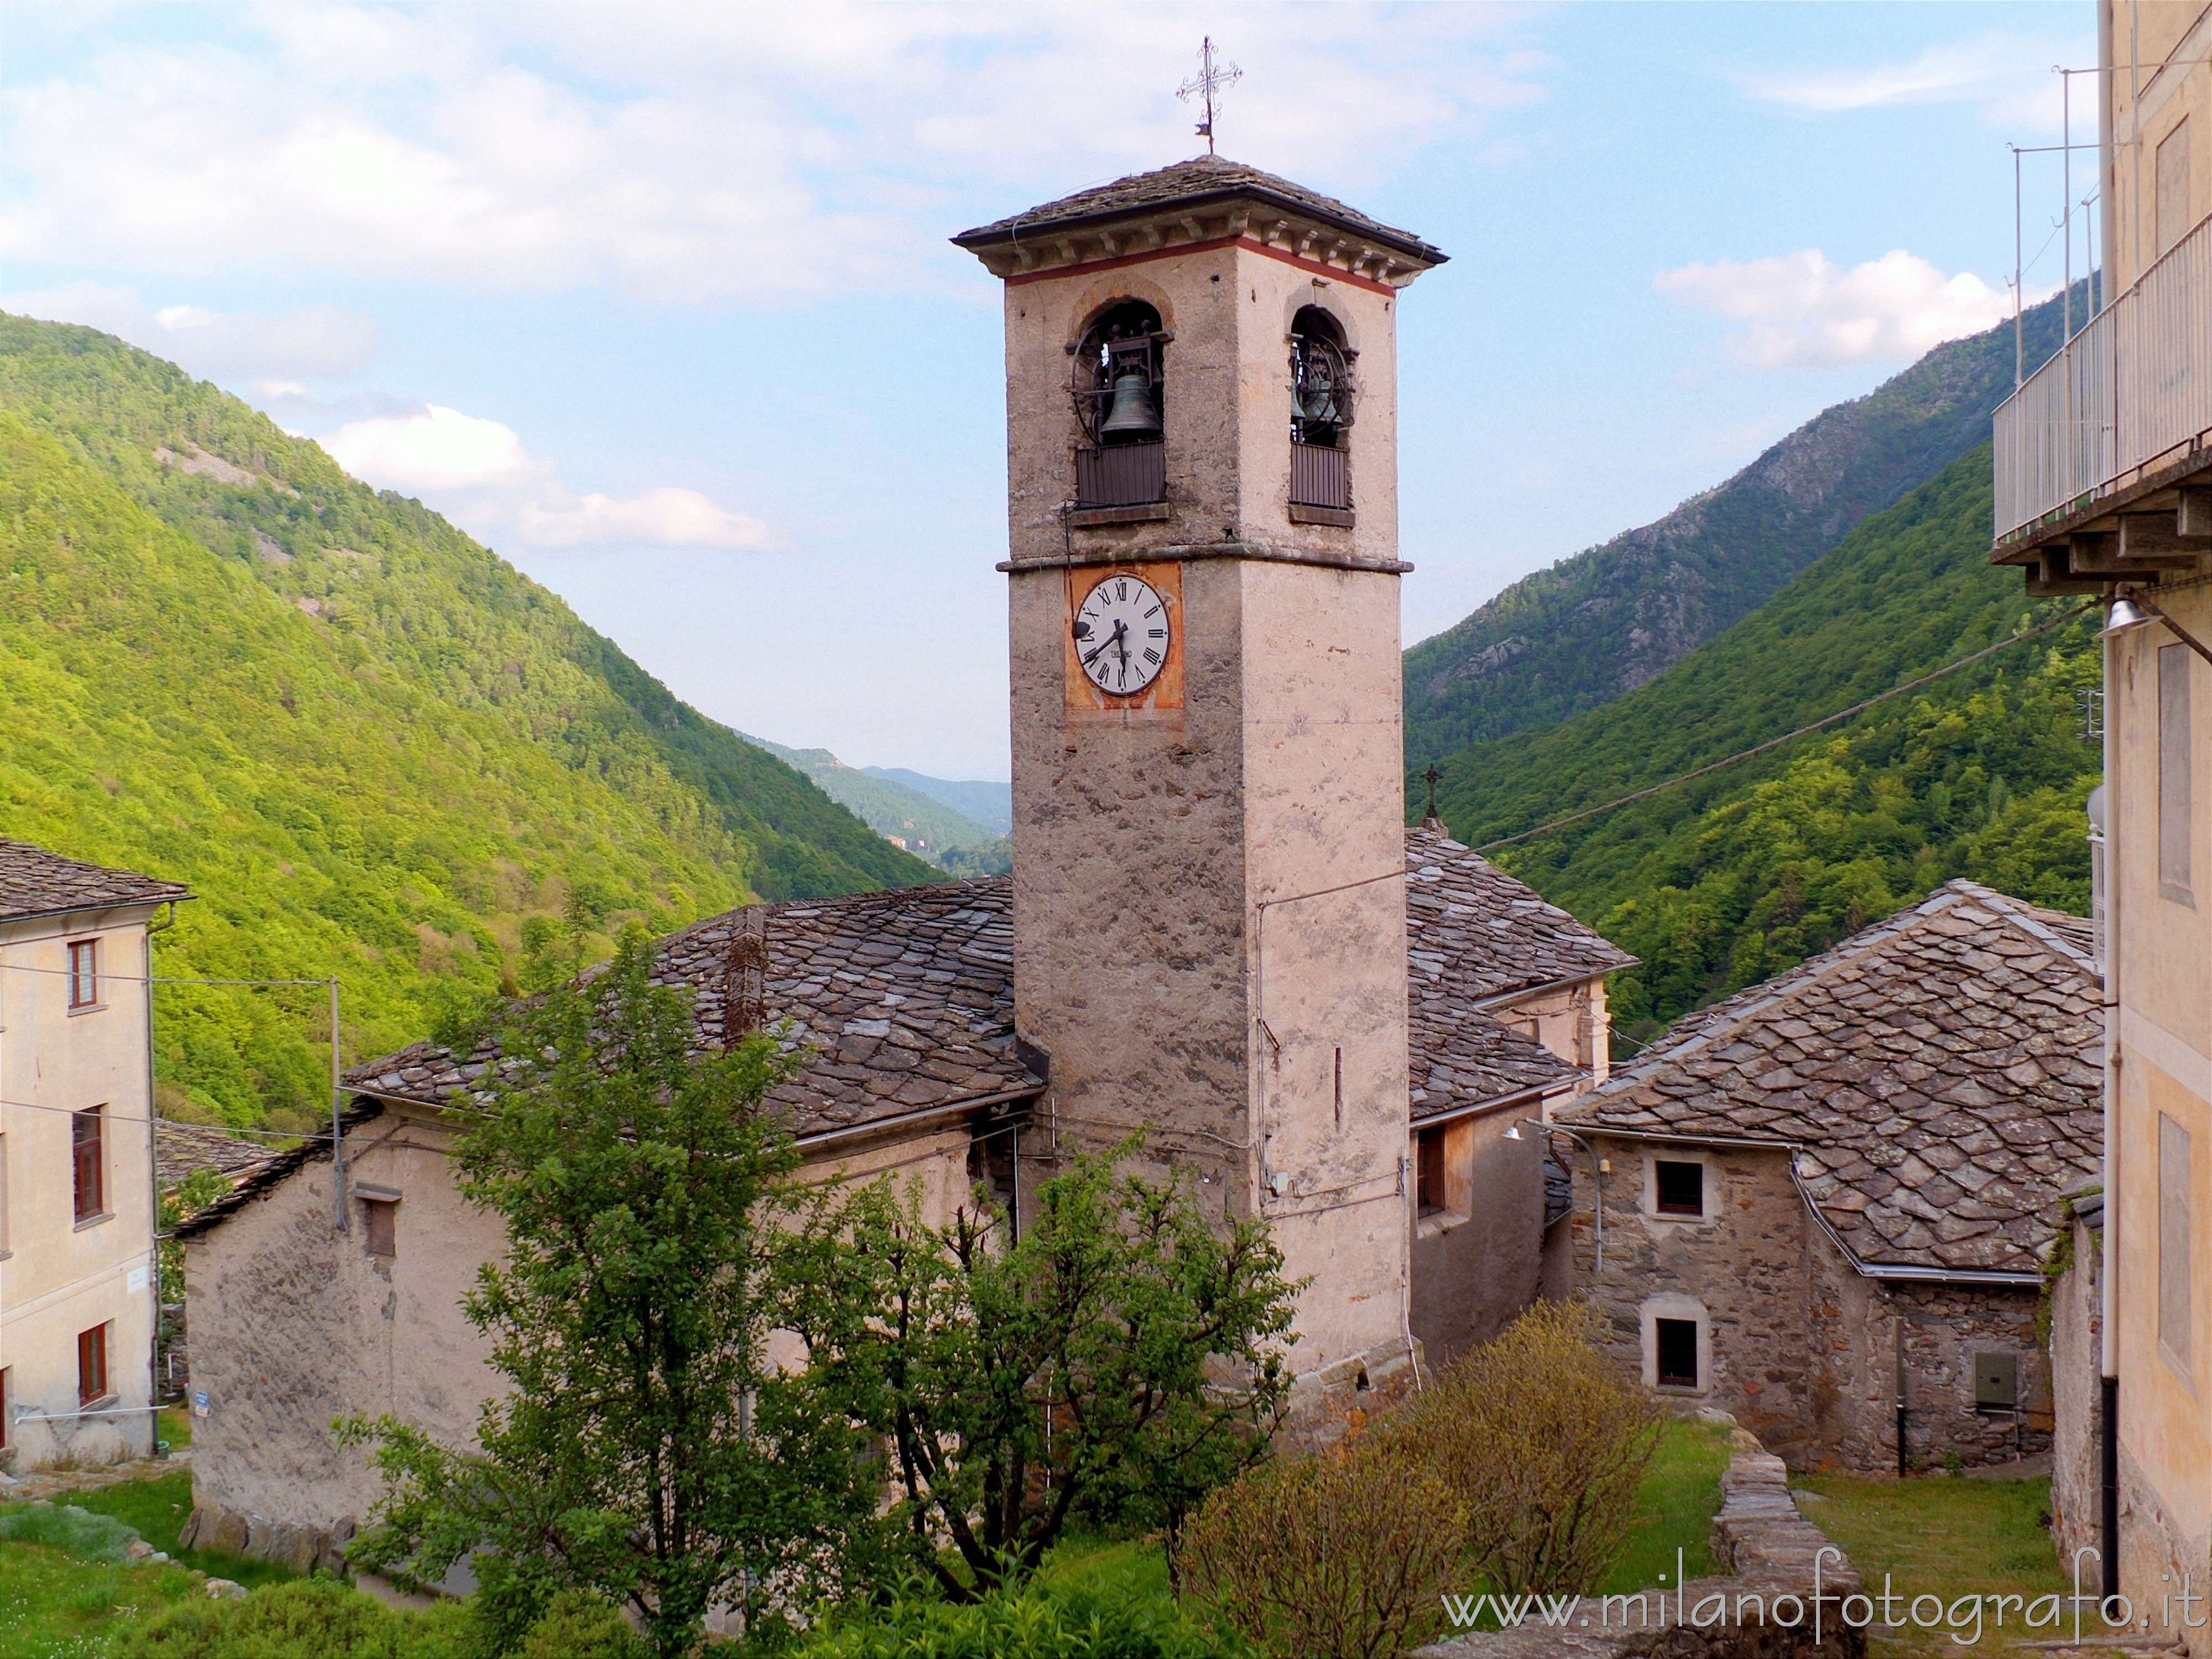 Montesinaro frazione di Piedicavallo (Biella): Il campanile e la chiesa vista da dietro - Montesinaro frazione di Piedicavallo (Biella)